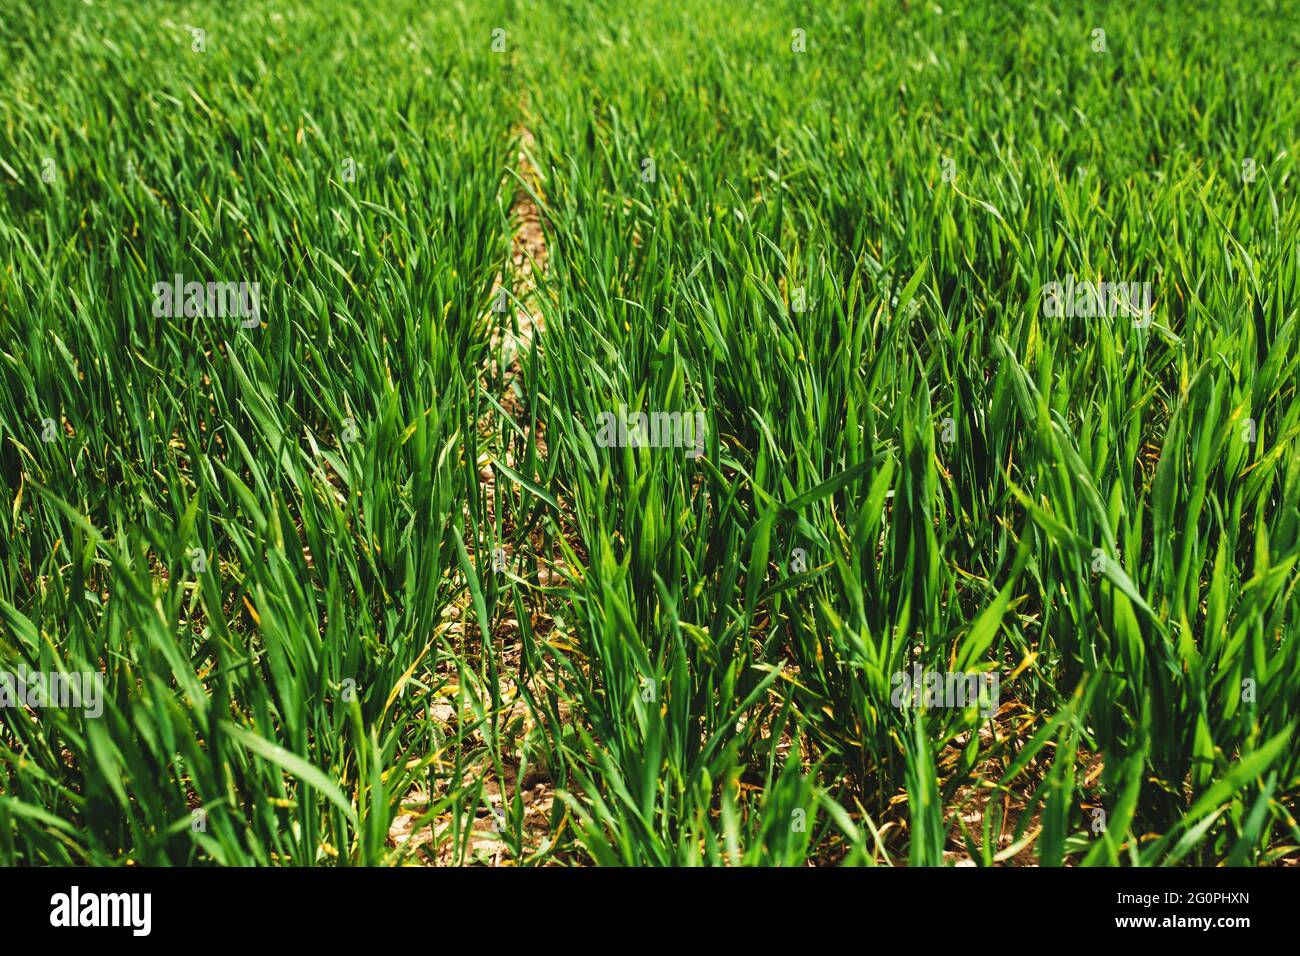 Endlose grüne Felder mit in der Nähe wachsenden Weizen im Frühjahr. Hochwertige Fotos Stockfoto